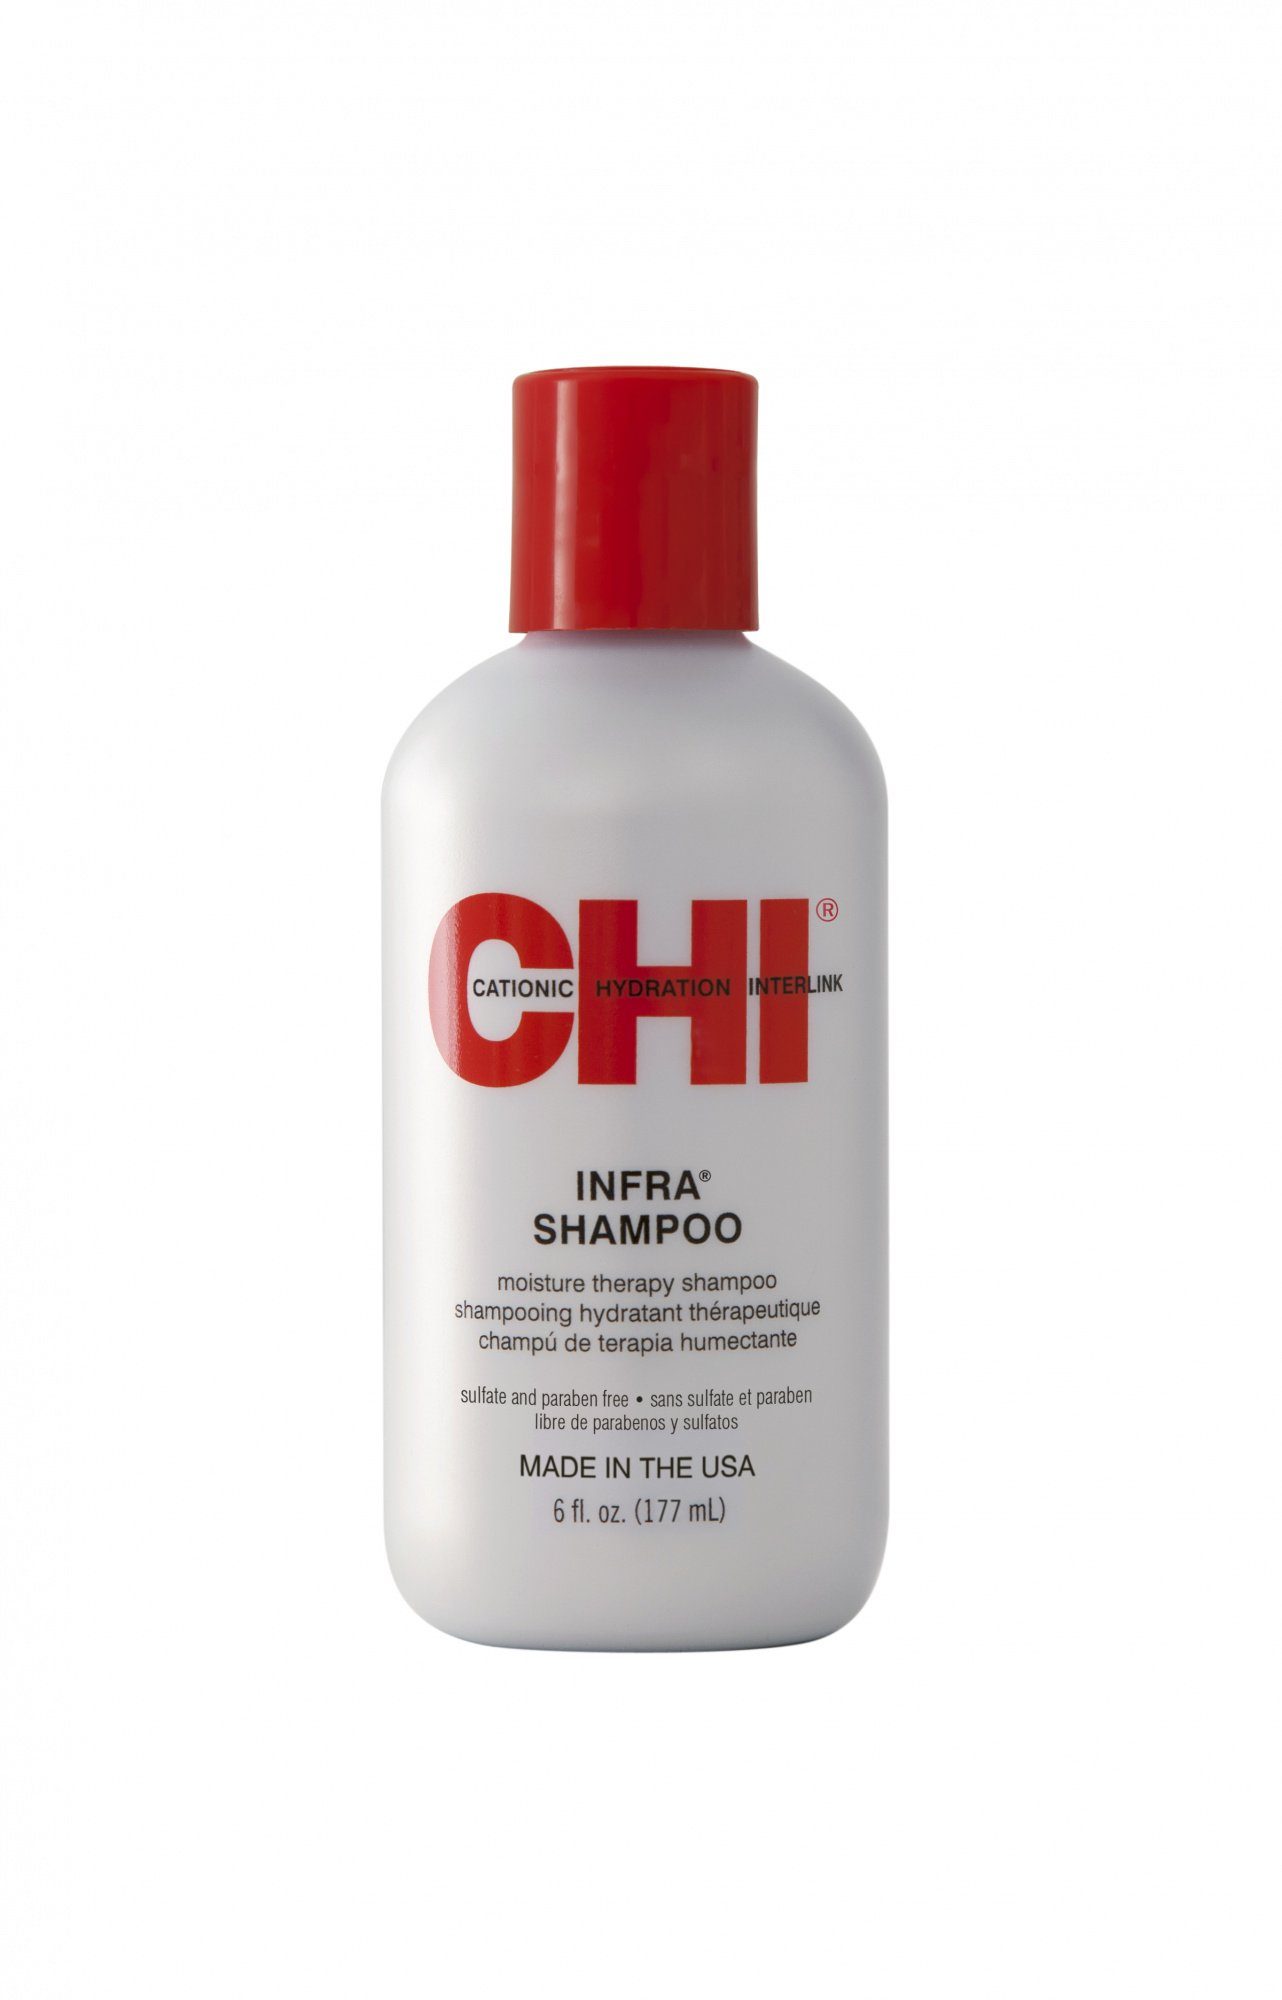 CHI Haarshampoo Chi Infra Shampoo, 1-tlg., für alle Haartypen, stärkt durch Proteine